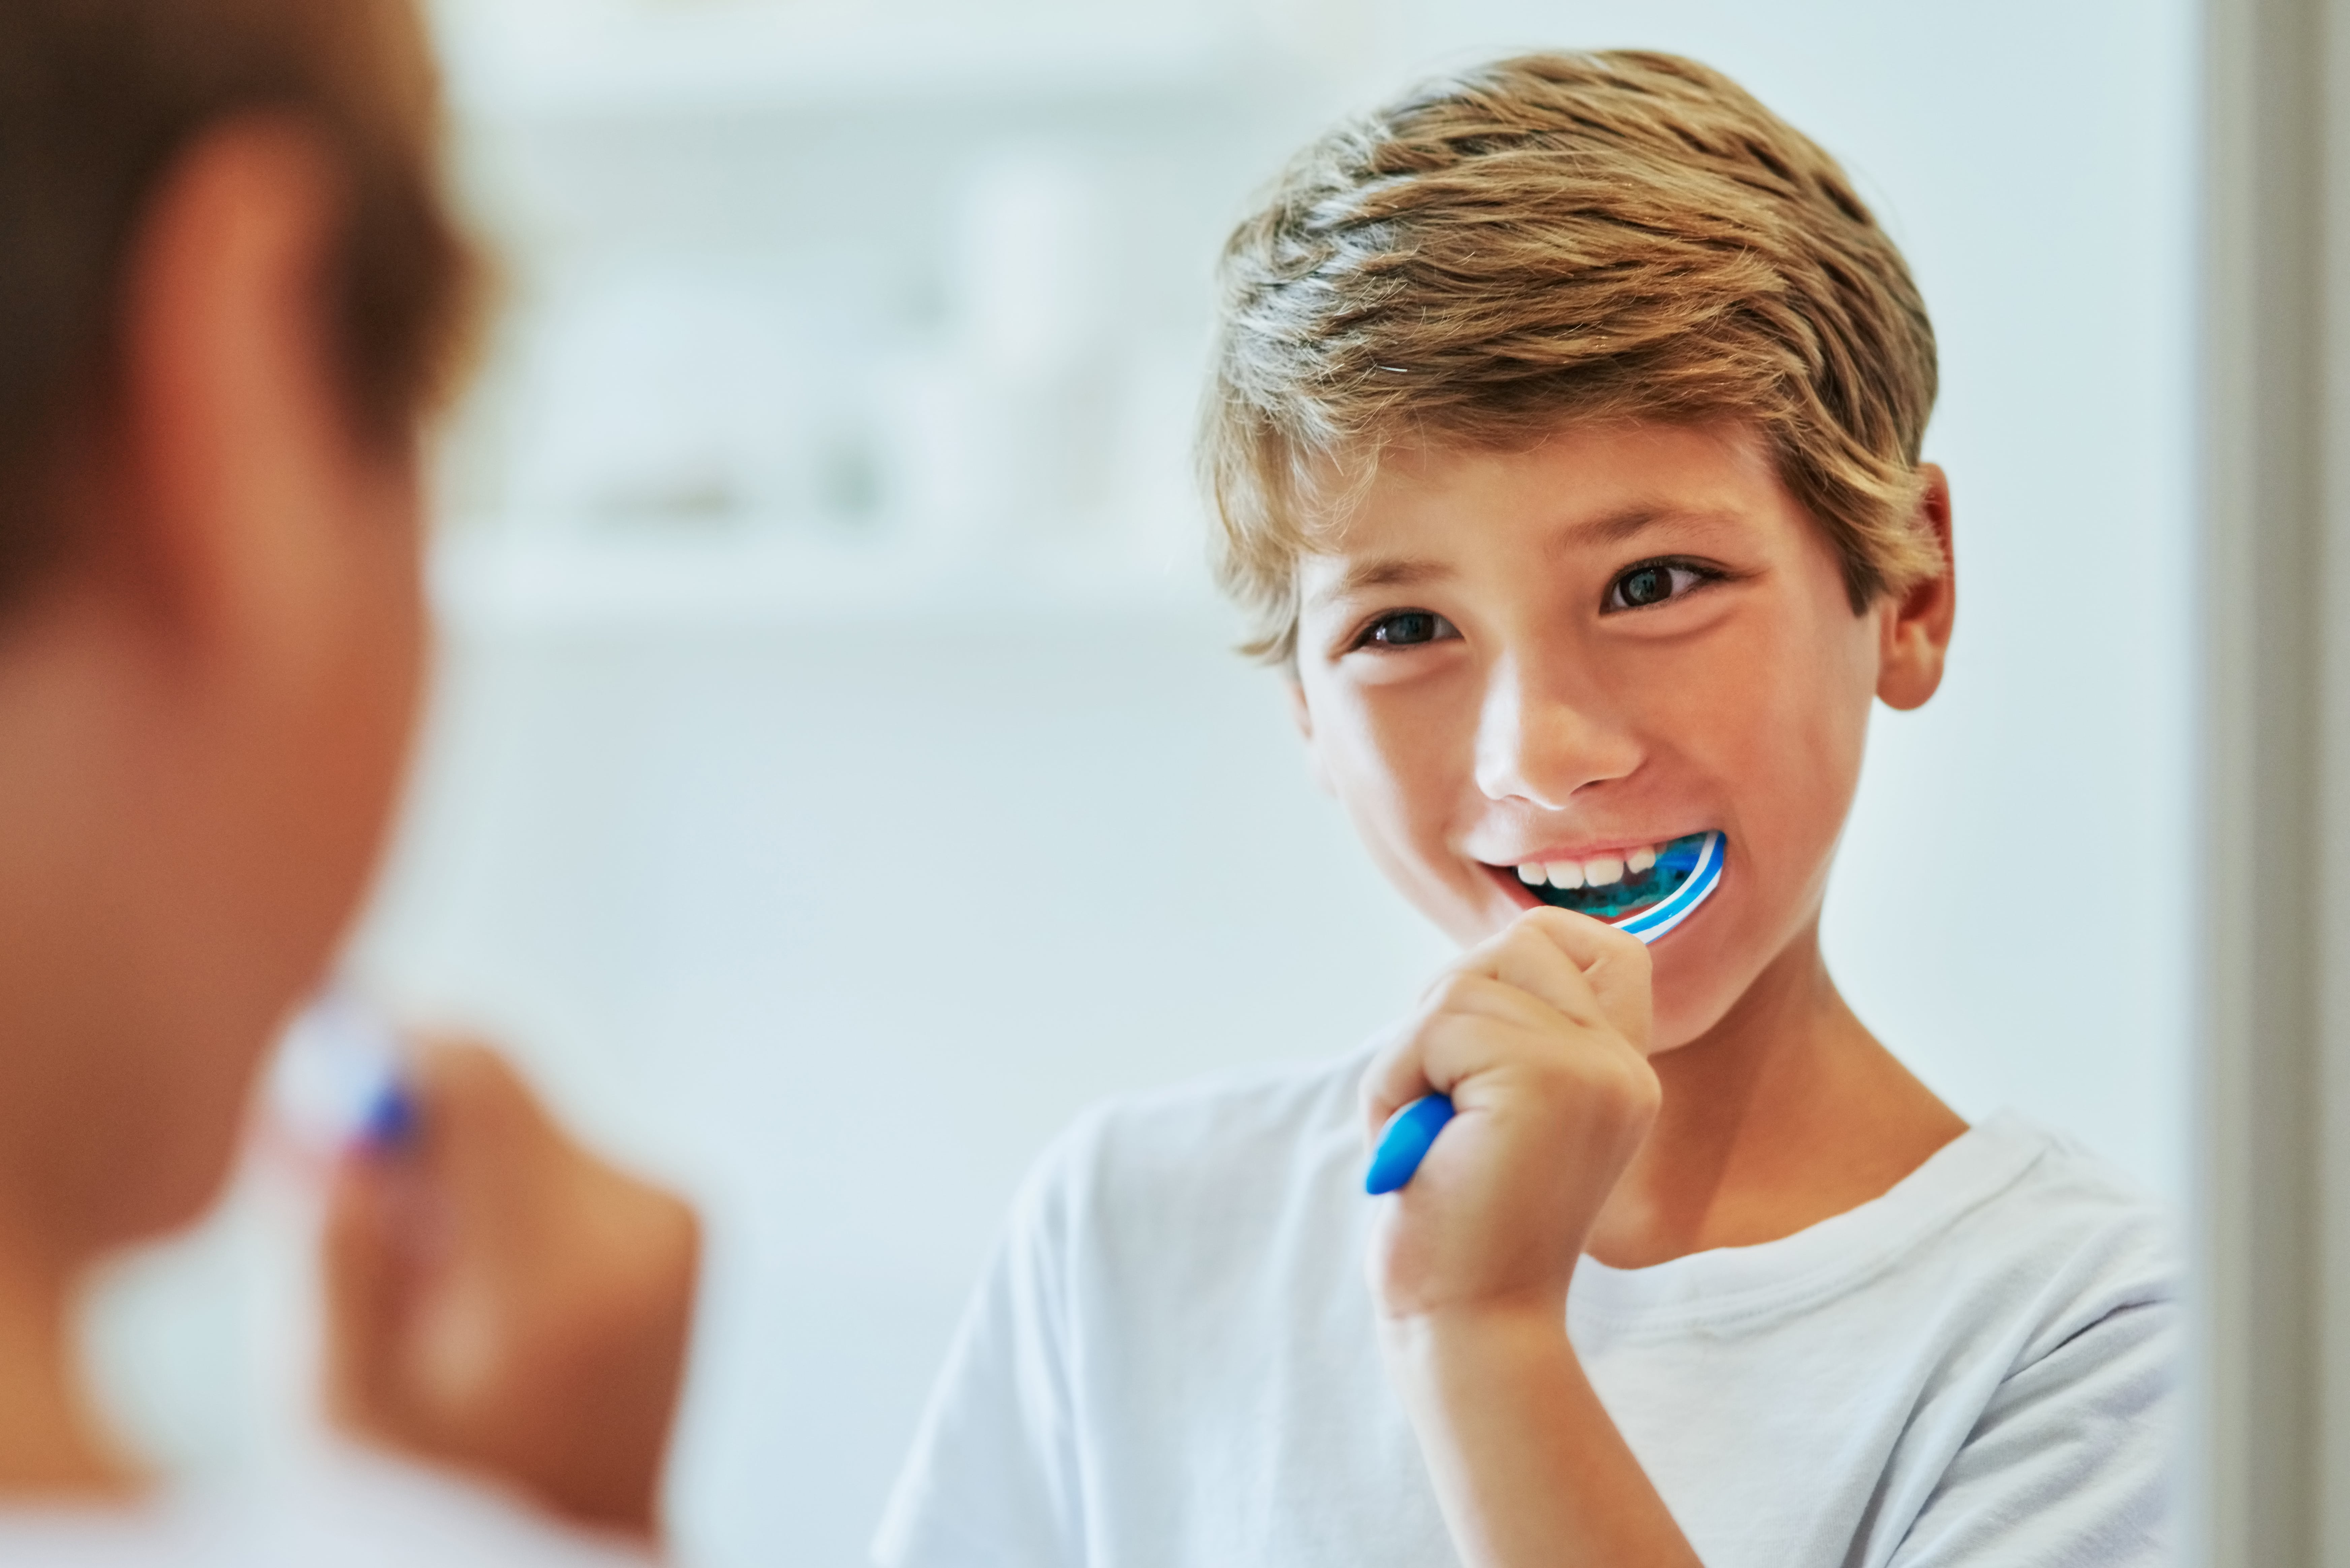 Garçon se tenant devant le miroir avec une brosse à dents dans la bouche comme symbole de la bonne technique de brossage des dents pour les enfants.